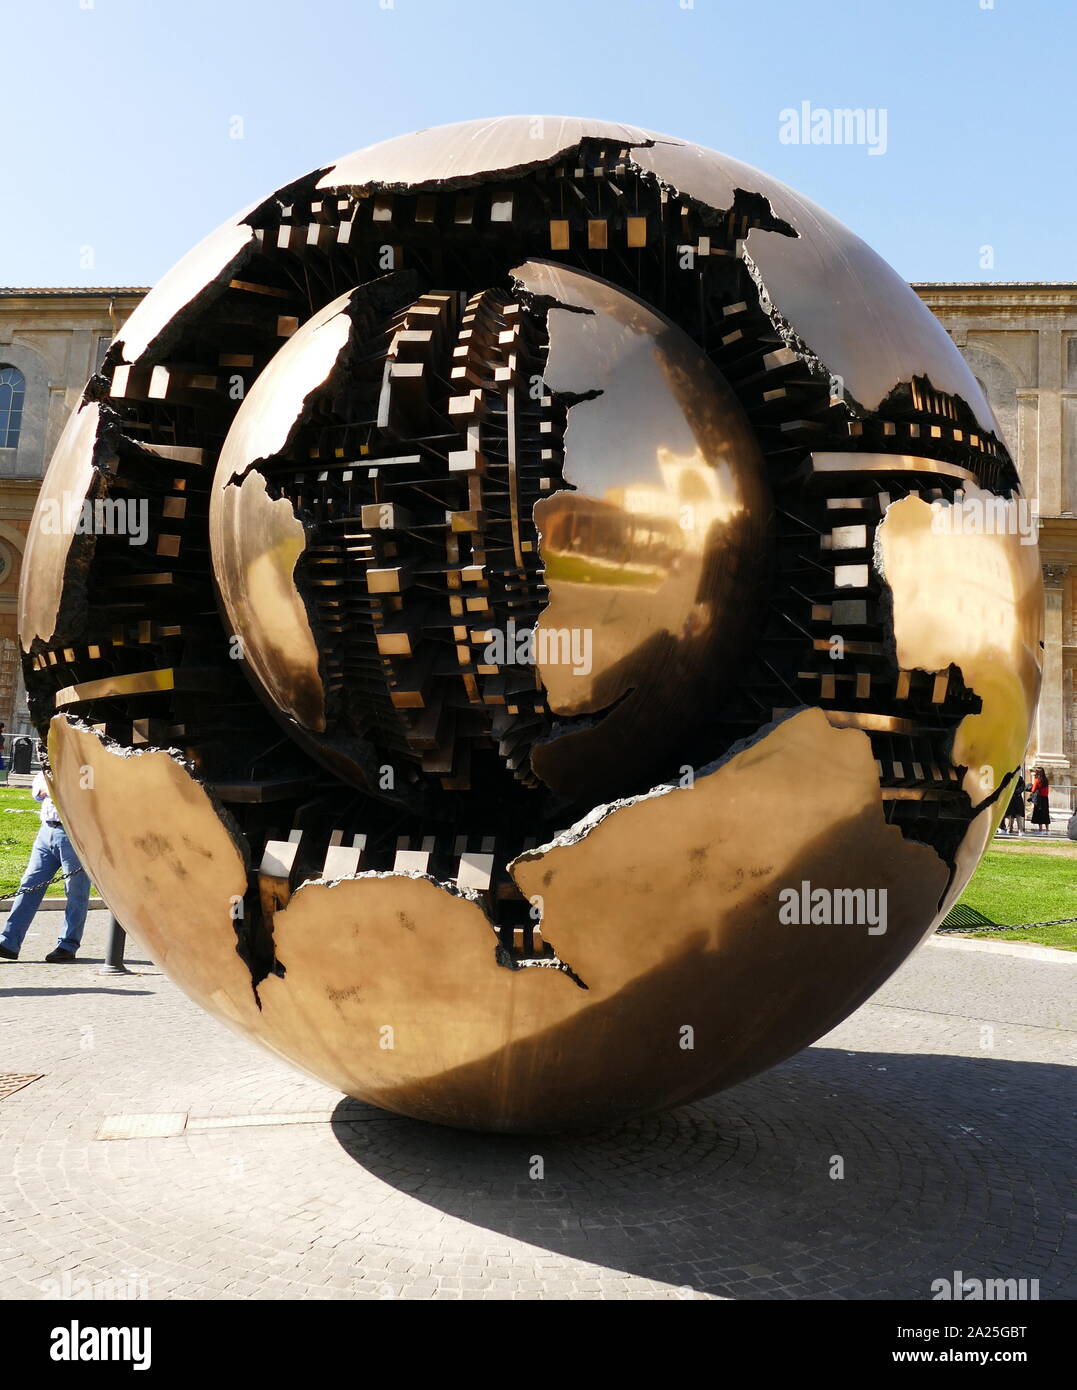 Sfera sfera di Arnaldo Pomodoro, ai Musei Vaticani Roma. Arnaldo Pomodoro (1926-) uno scultore italiano. Foto Stock